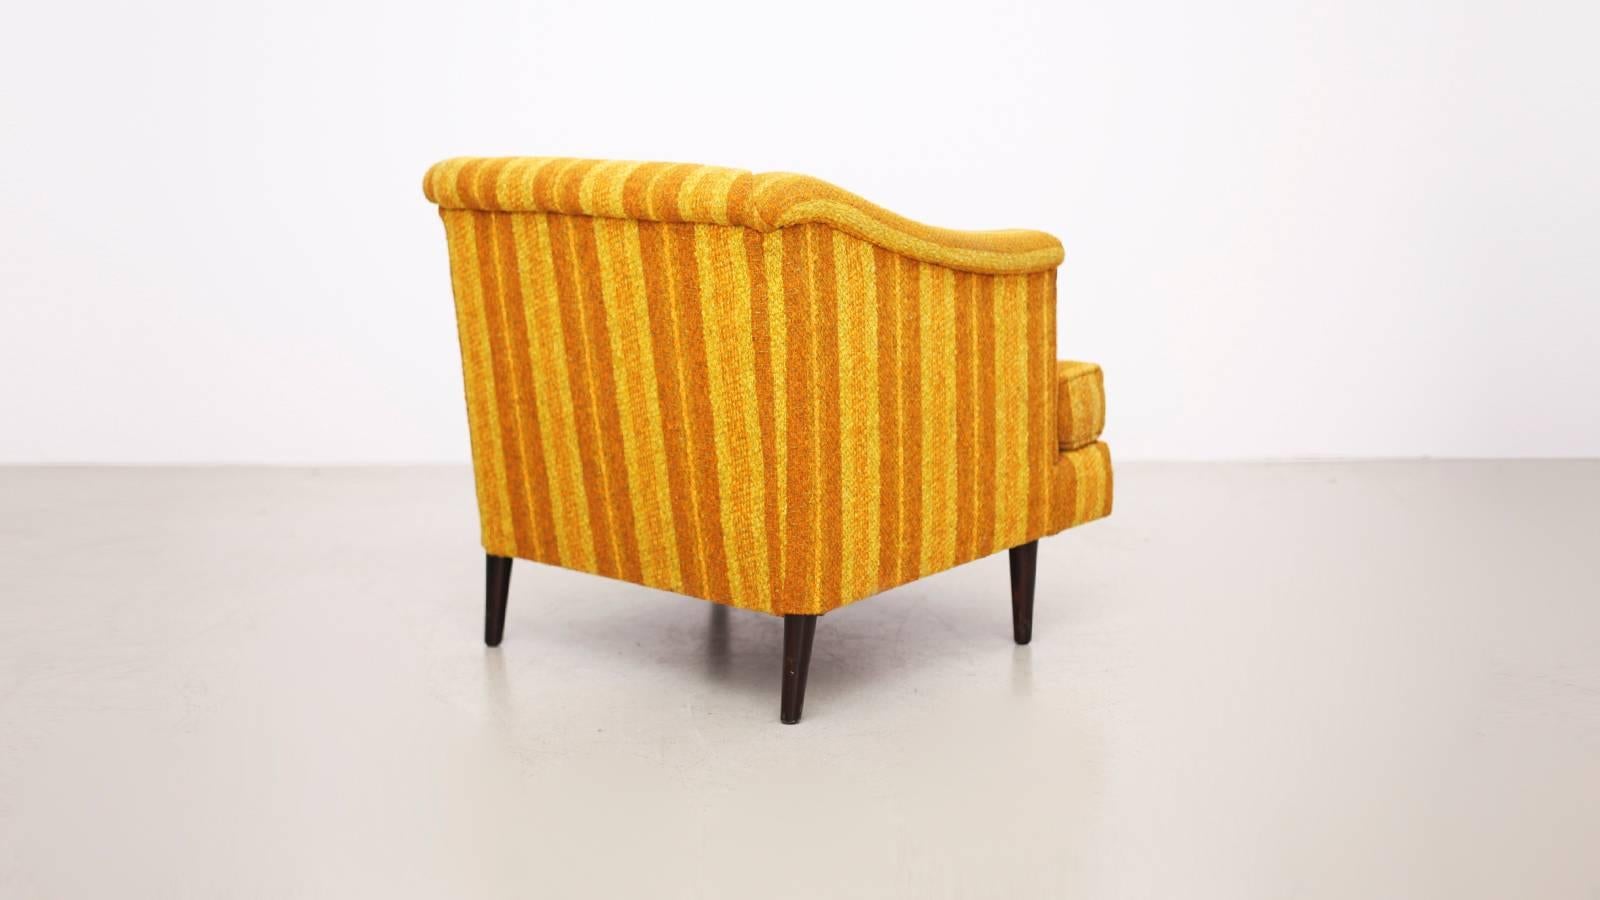 Edward Wormley Lounge Chair für Dunbar, die auch verwendet werden kann, wie es ist, aber wir empfehlen ein neues Kleid für diese sehr bequemen Stuhl. Bitte fragen Sie nach Kostenvoranschlägen.

*Dieser Beitrag ist kuratiert von Original Berlin*.